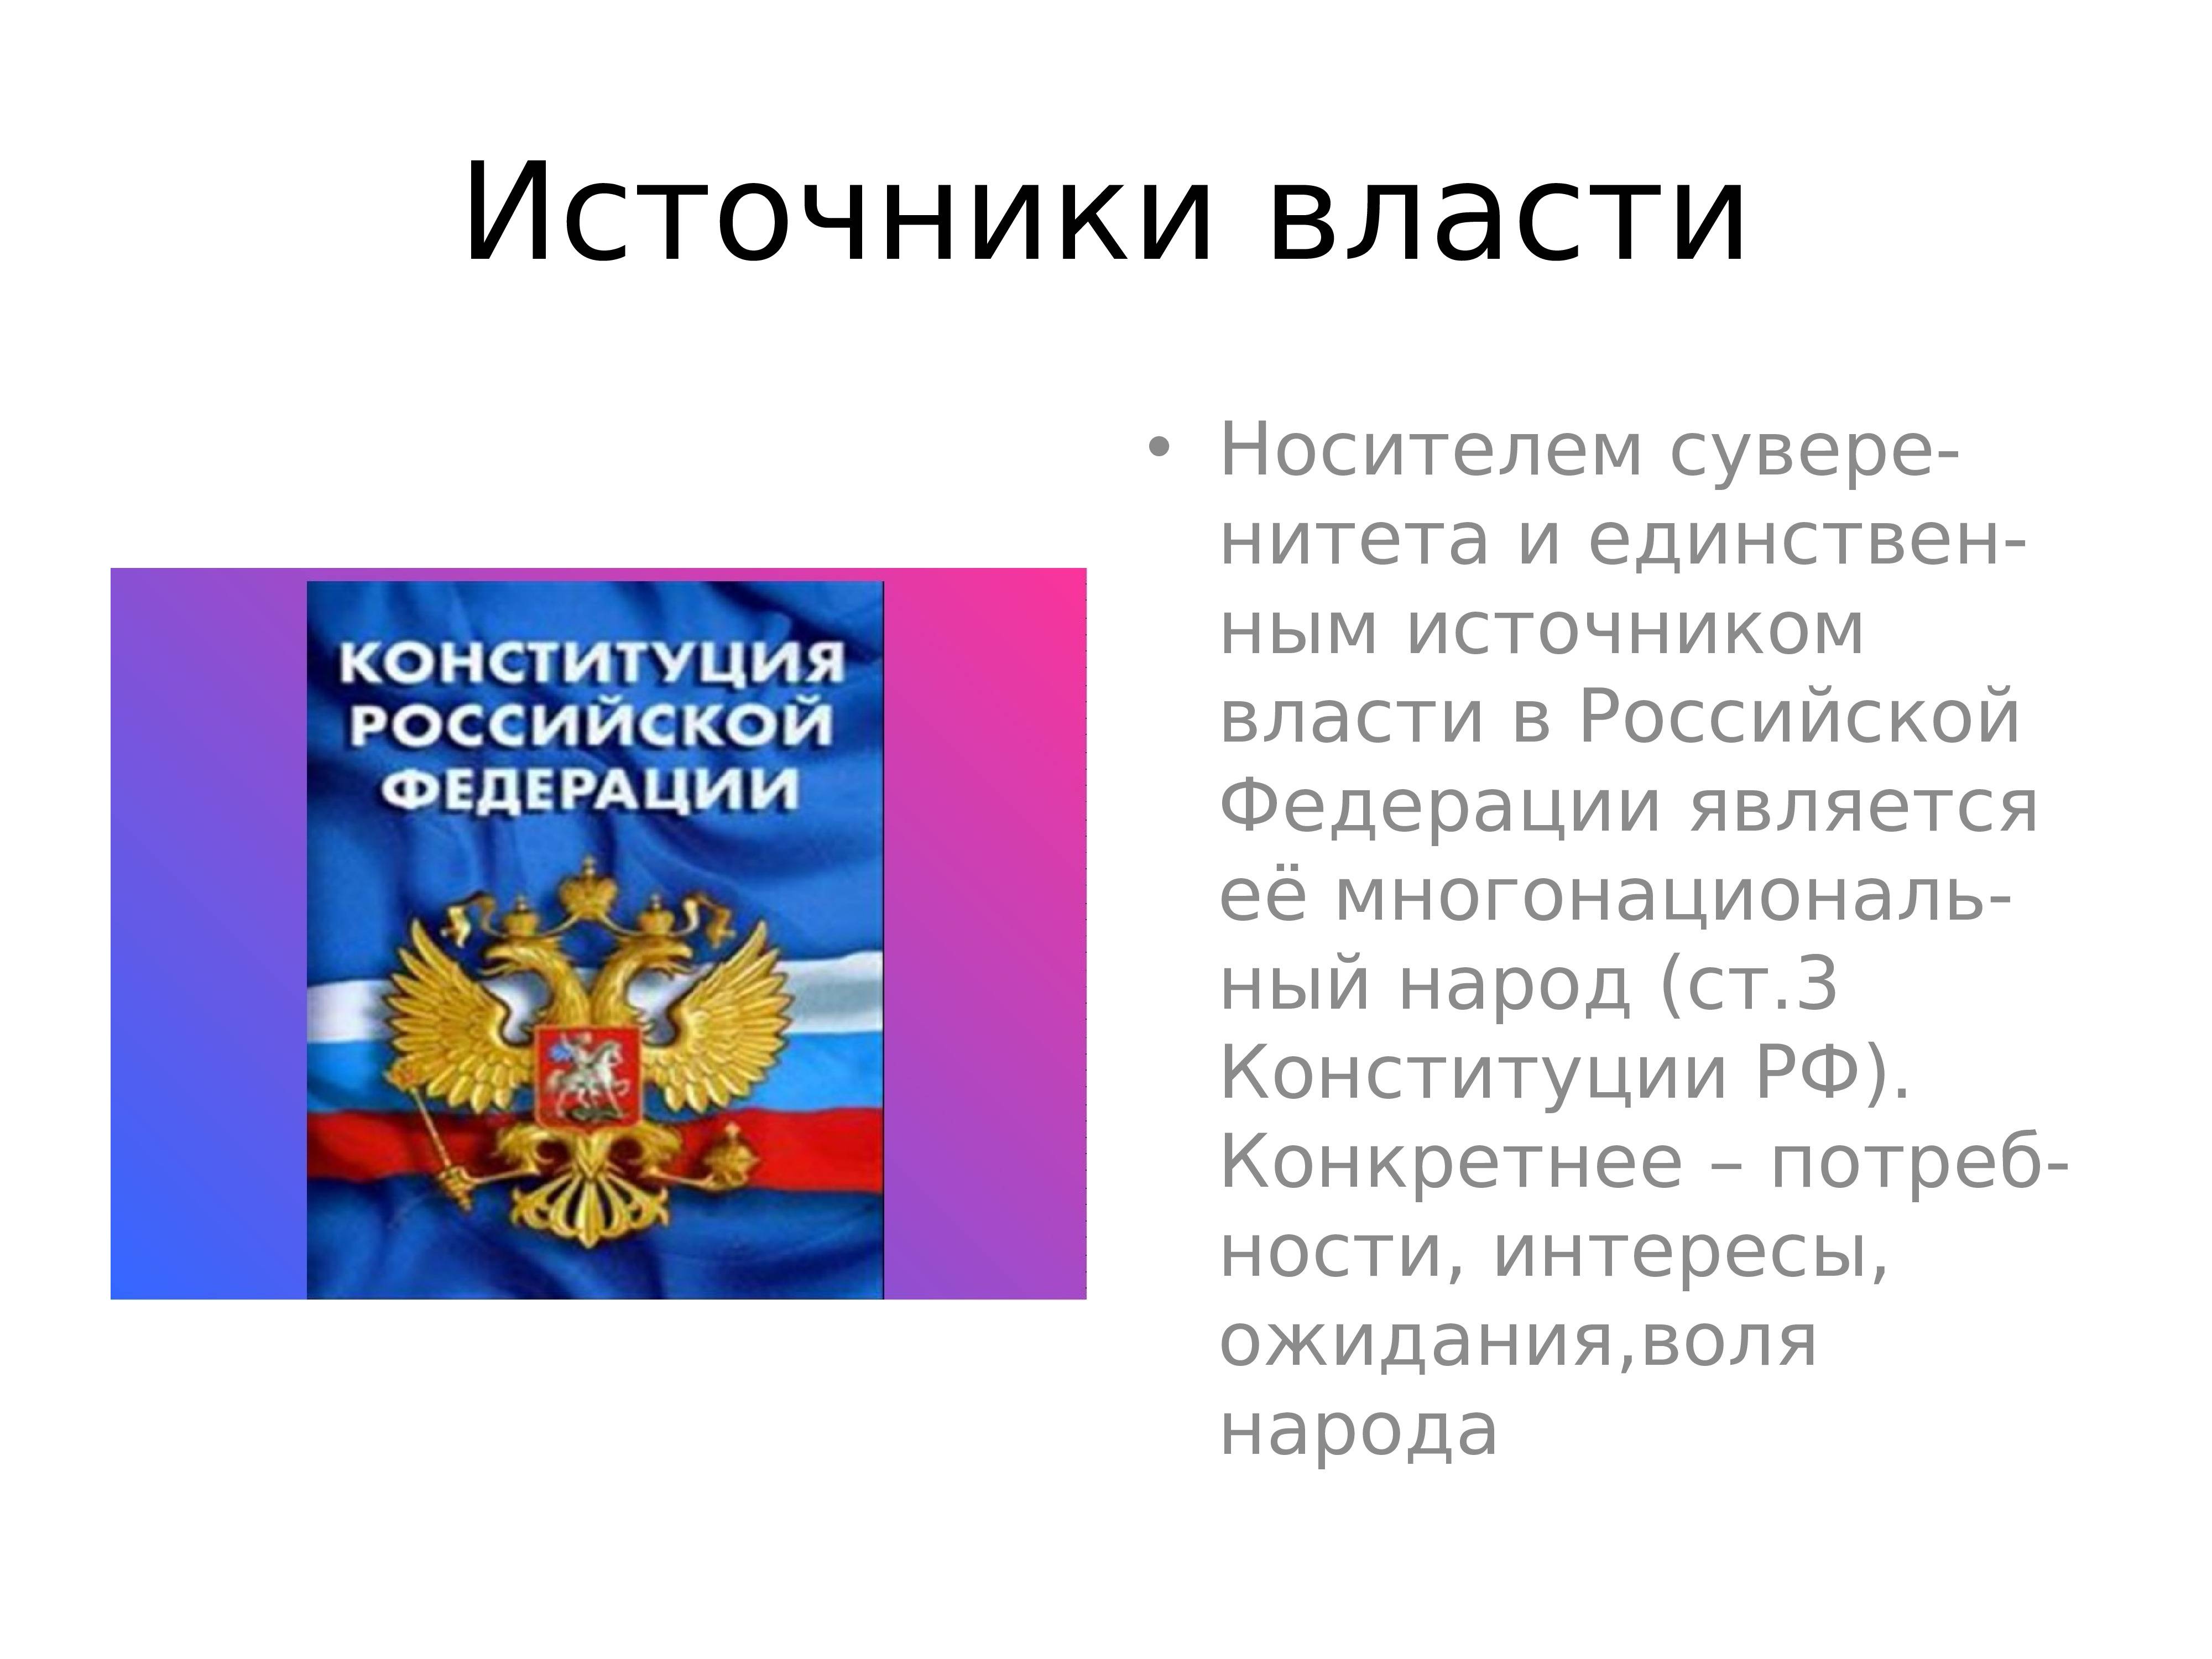 Способы осуществления власти народом российской федерации